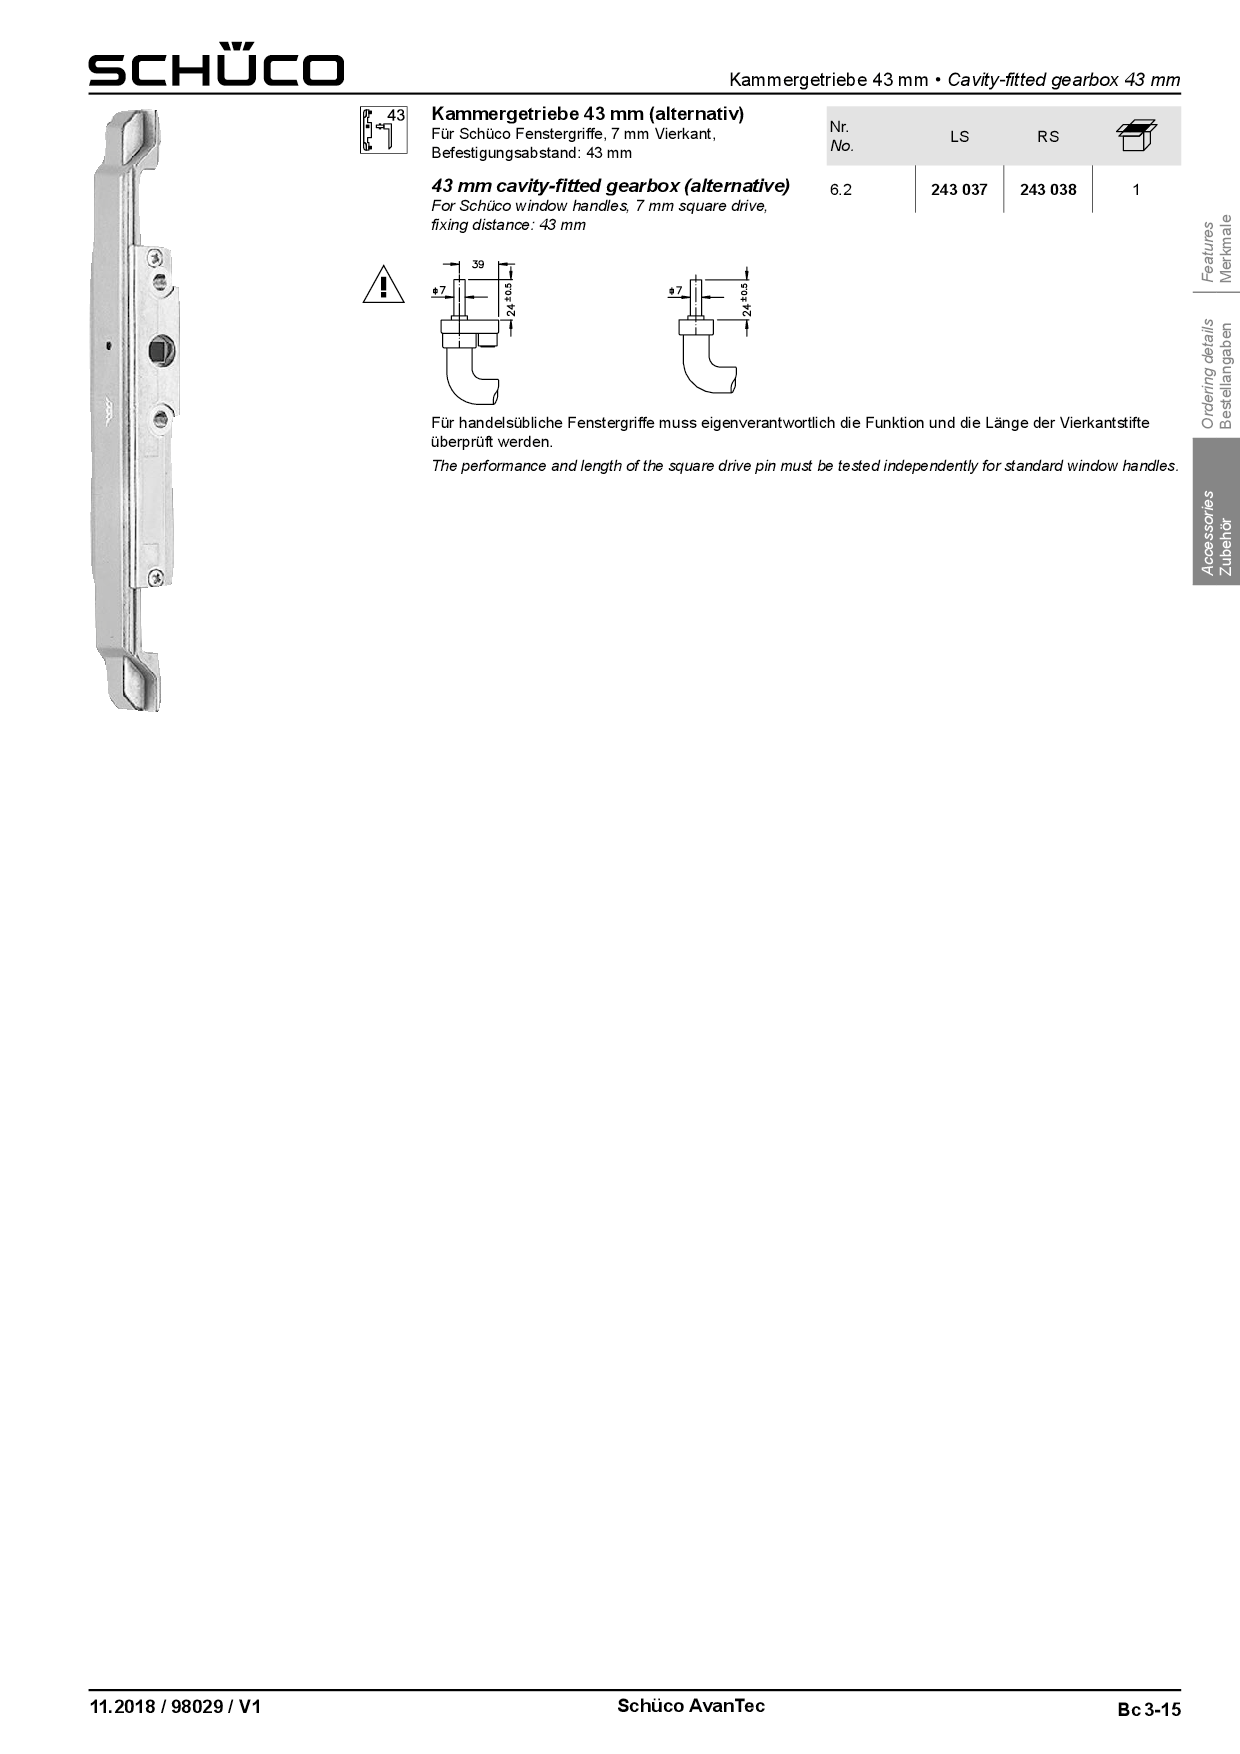 Schüco Kammergetriebe AvanTec 43 mm DIN rechts 243038 / 275040 /  219900